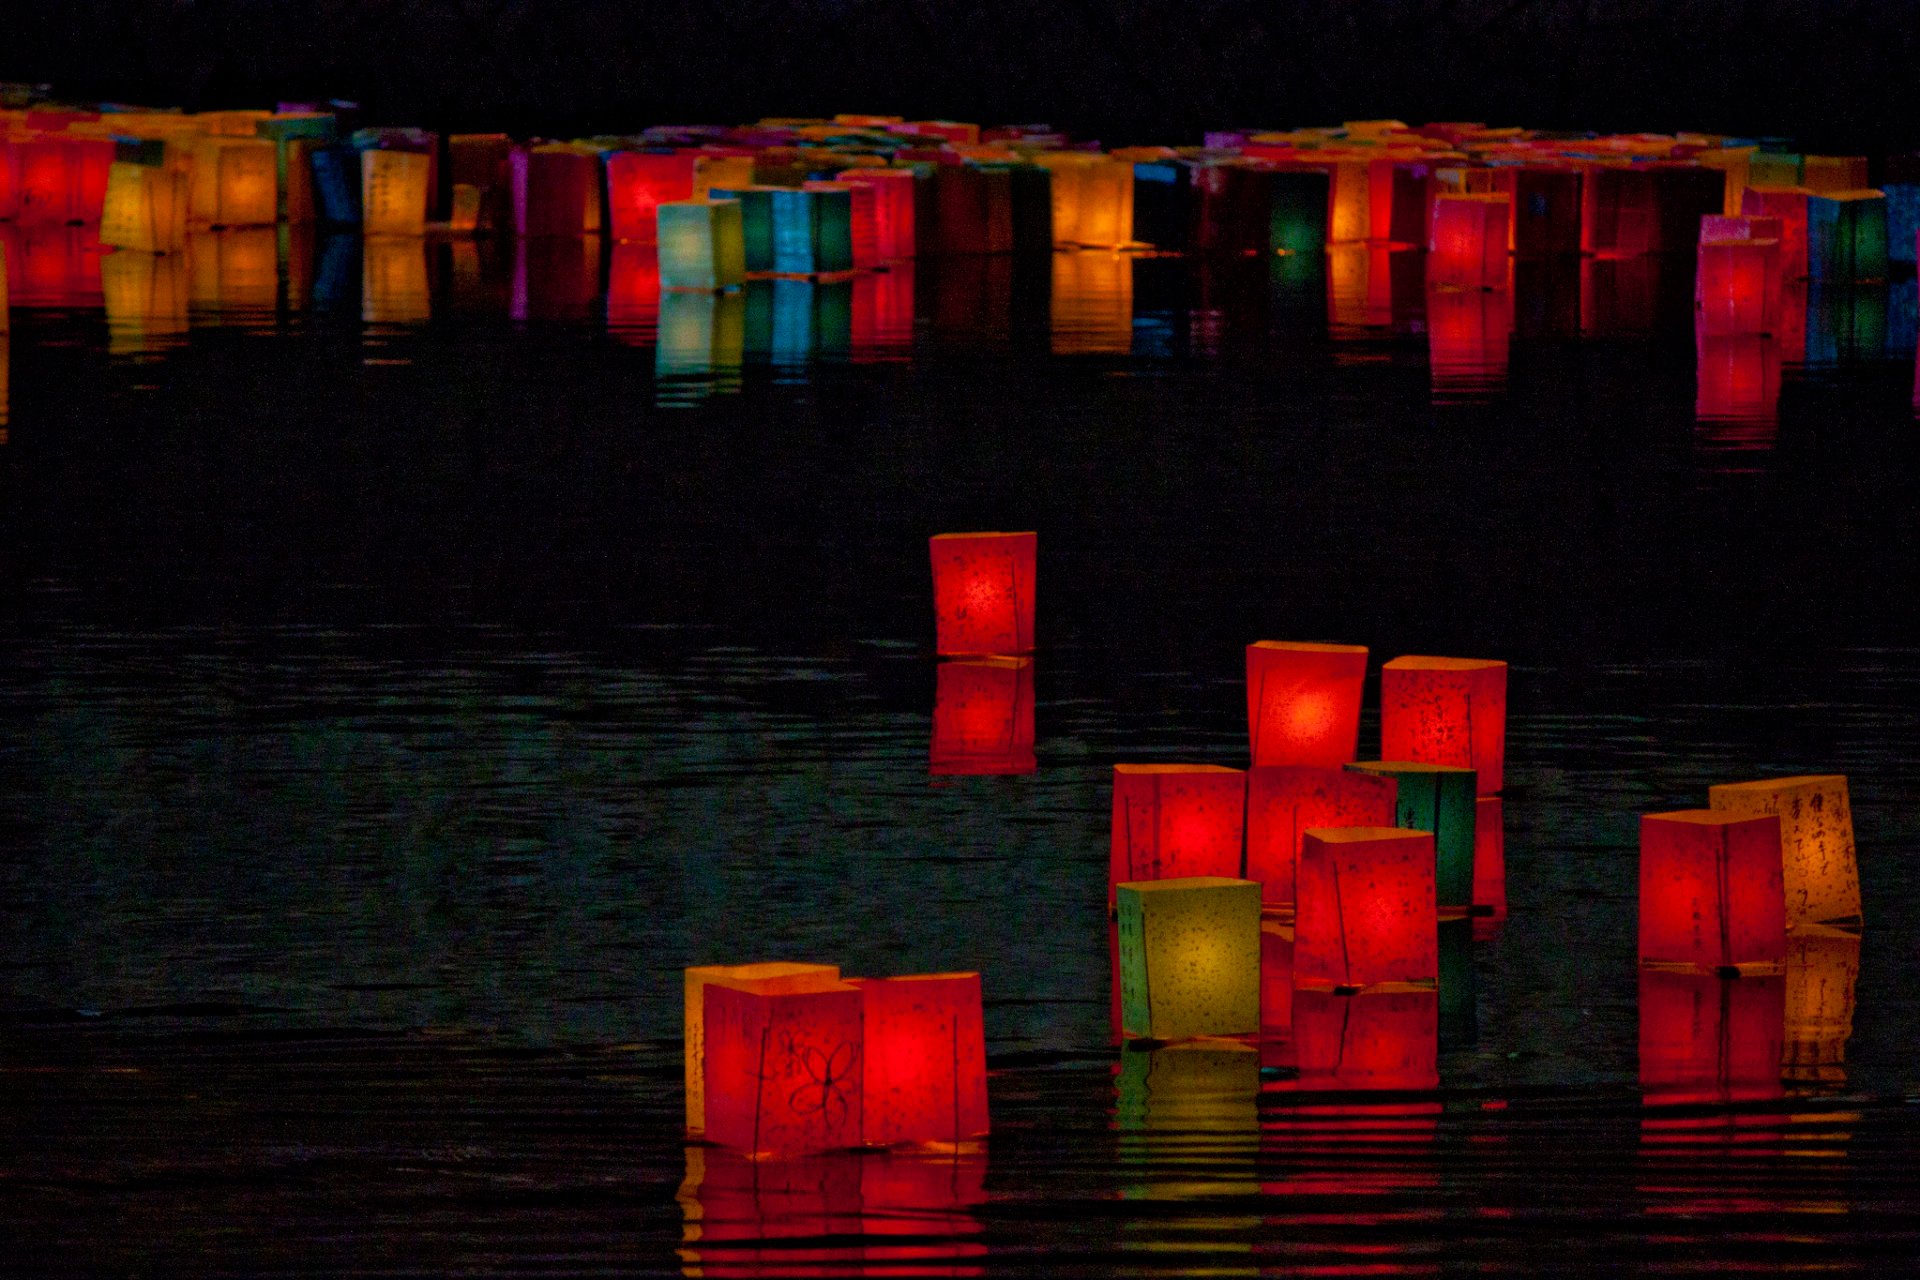 Festival delle lanterne in Giappone (Toro Nagashi)